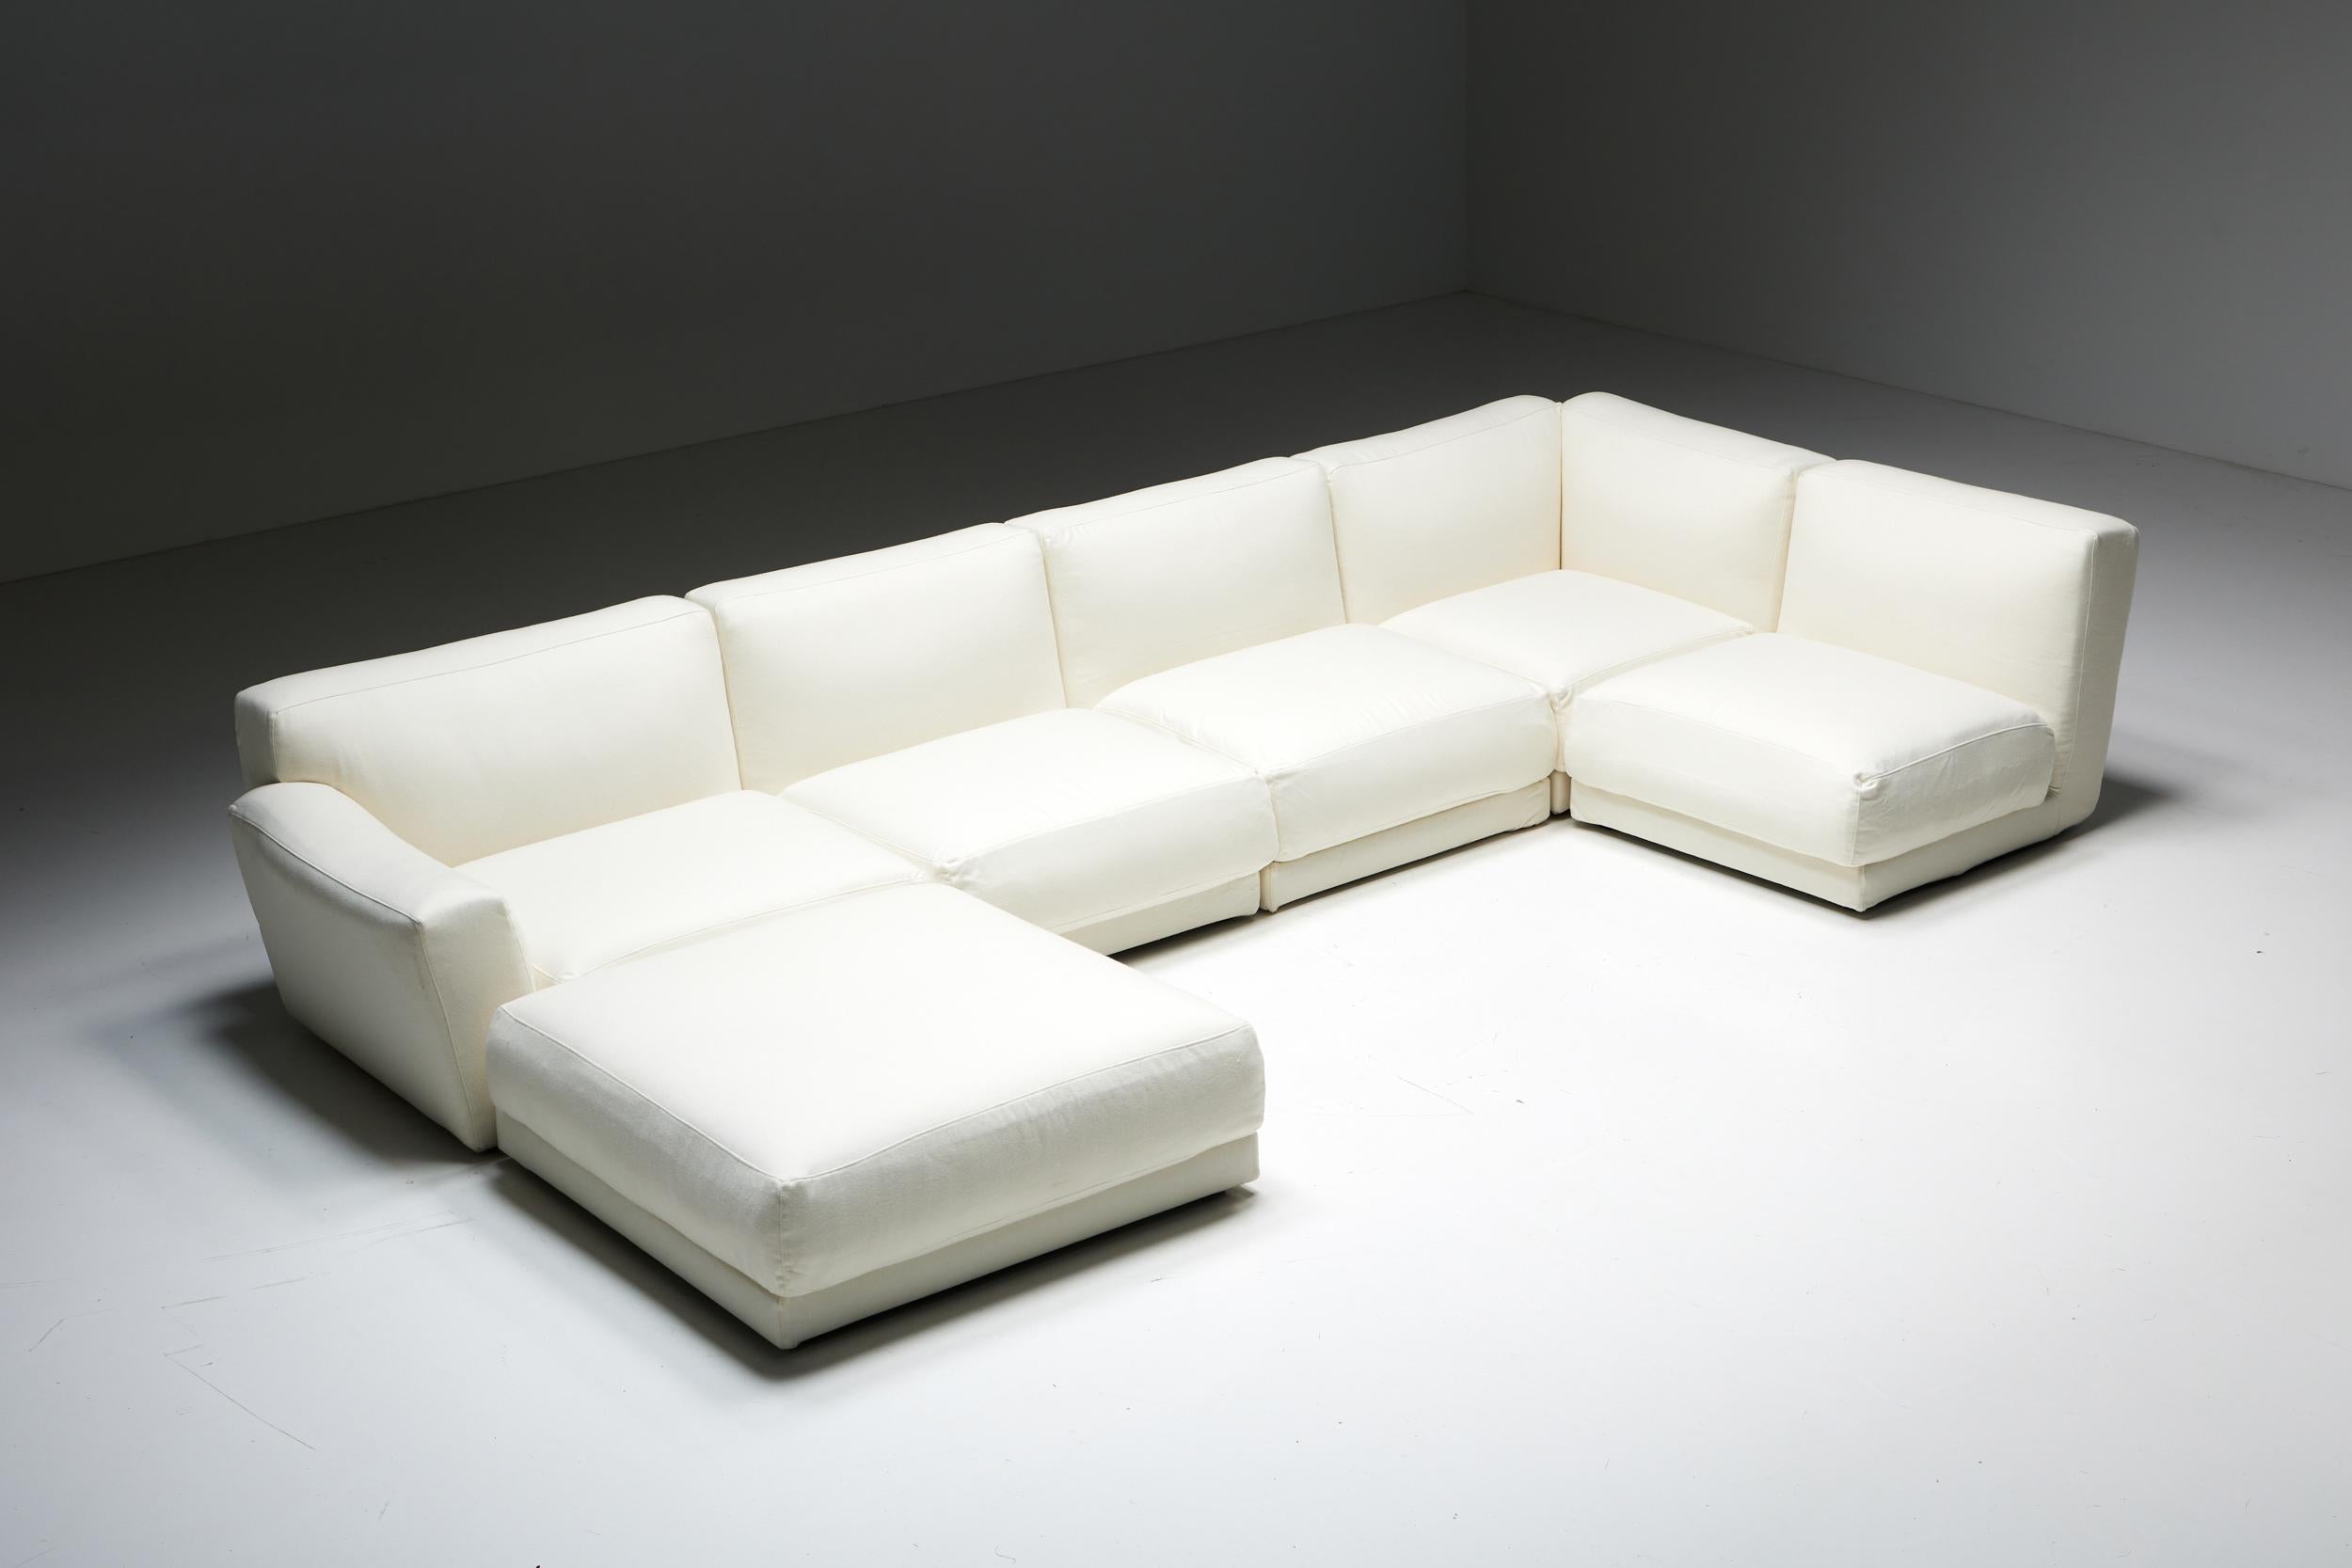 Modulares Sofa; B&B Italia; Maxalto; Luis; 21. Jahrhundert; Zeitgenössisches Design; Antonio Citterio;

Das modulare Sofa 